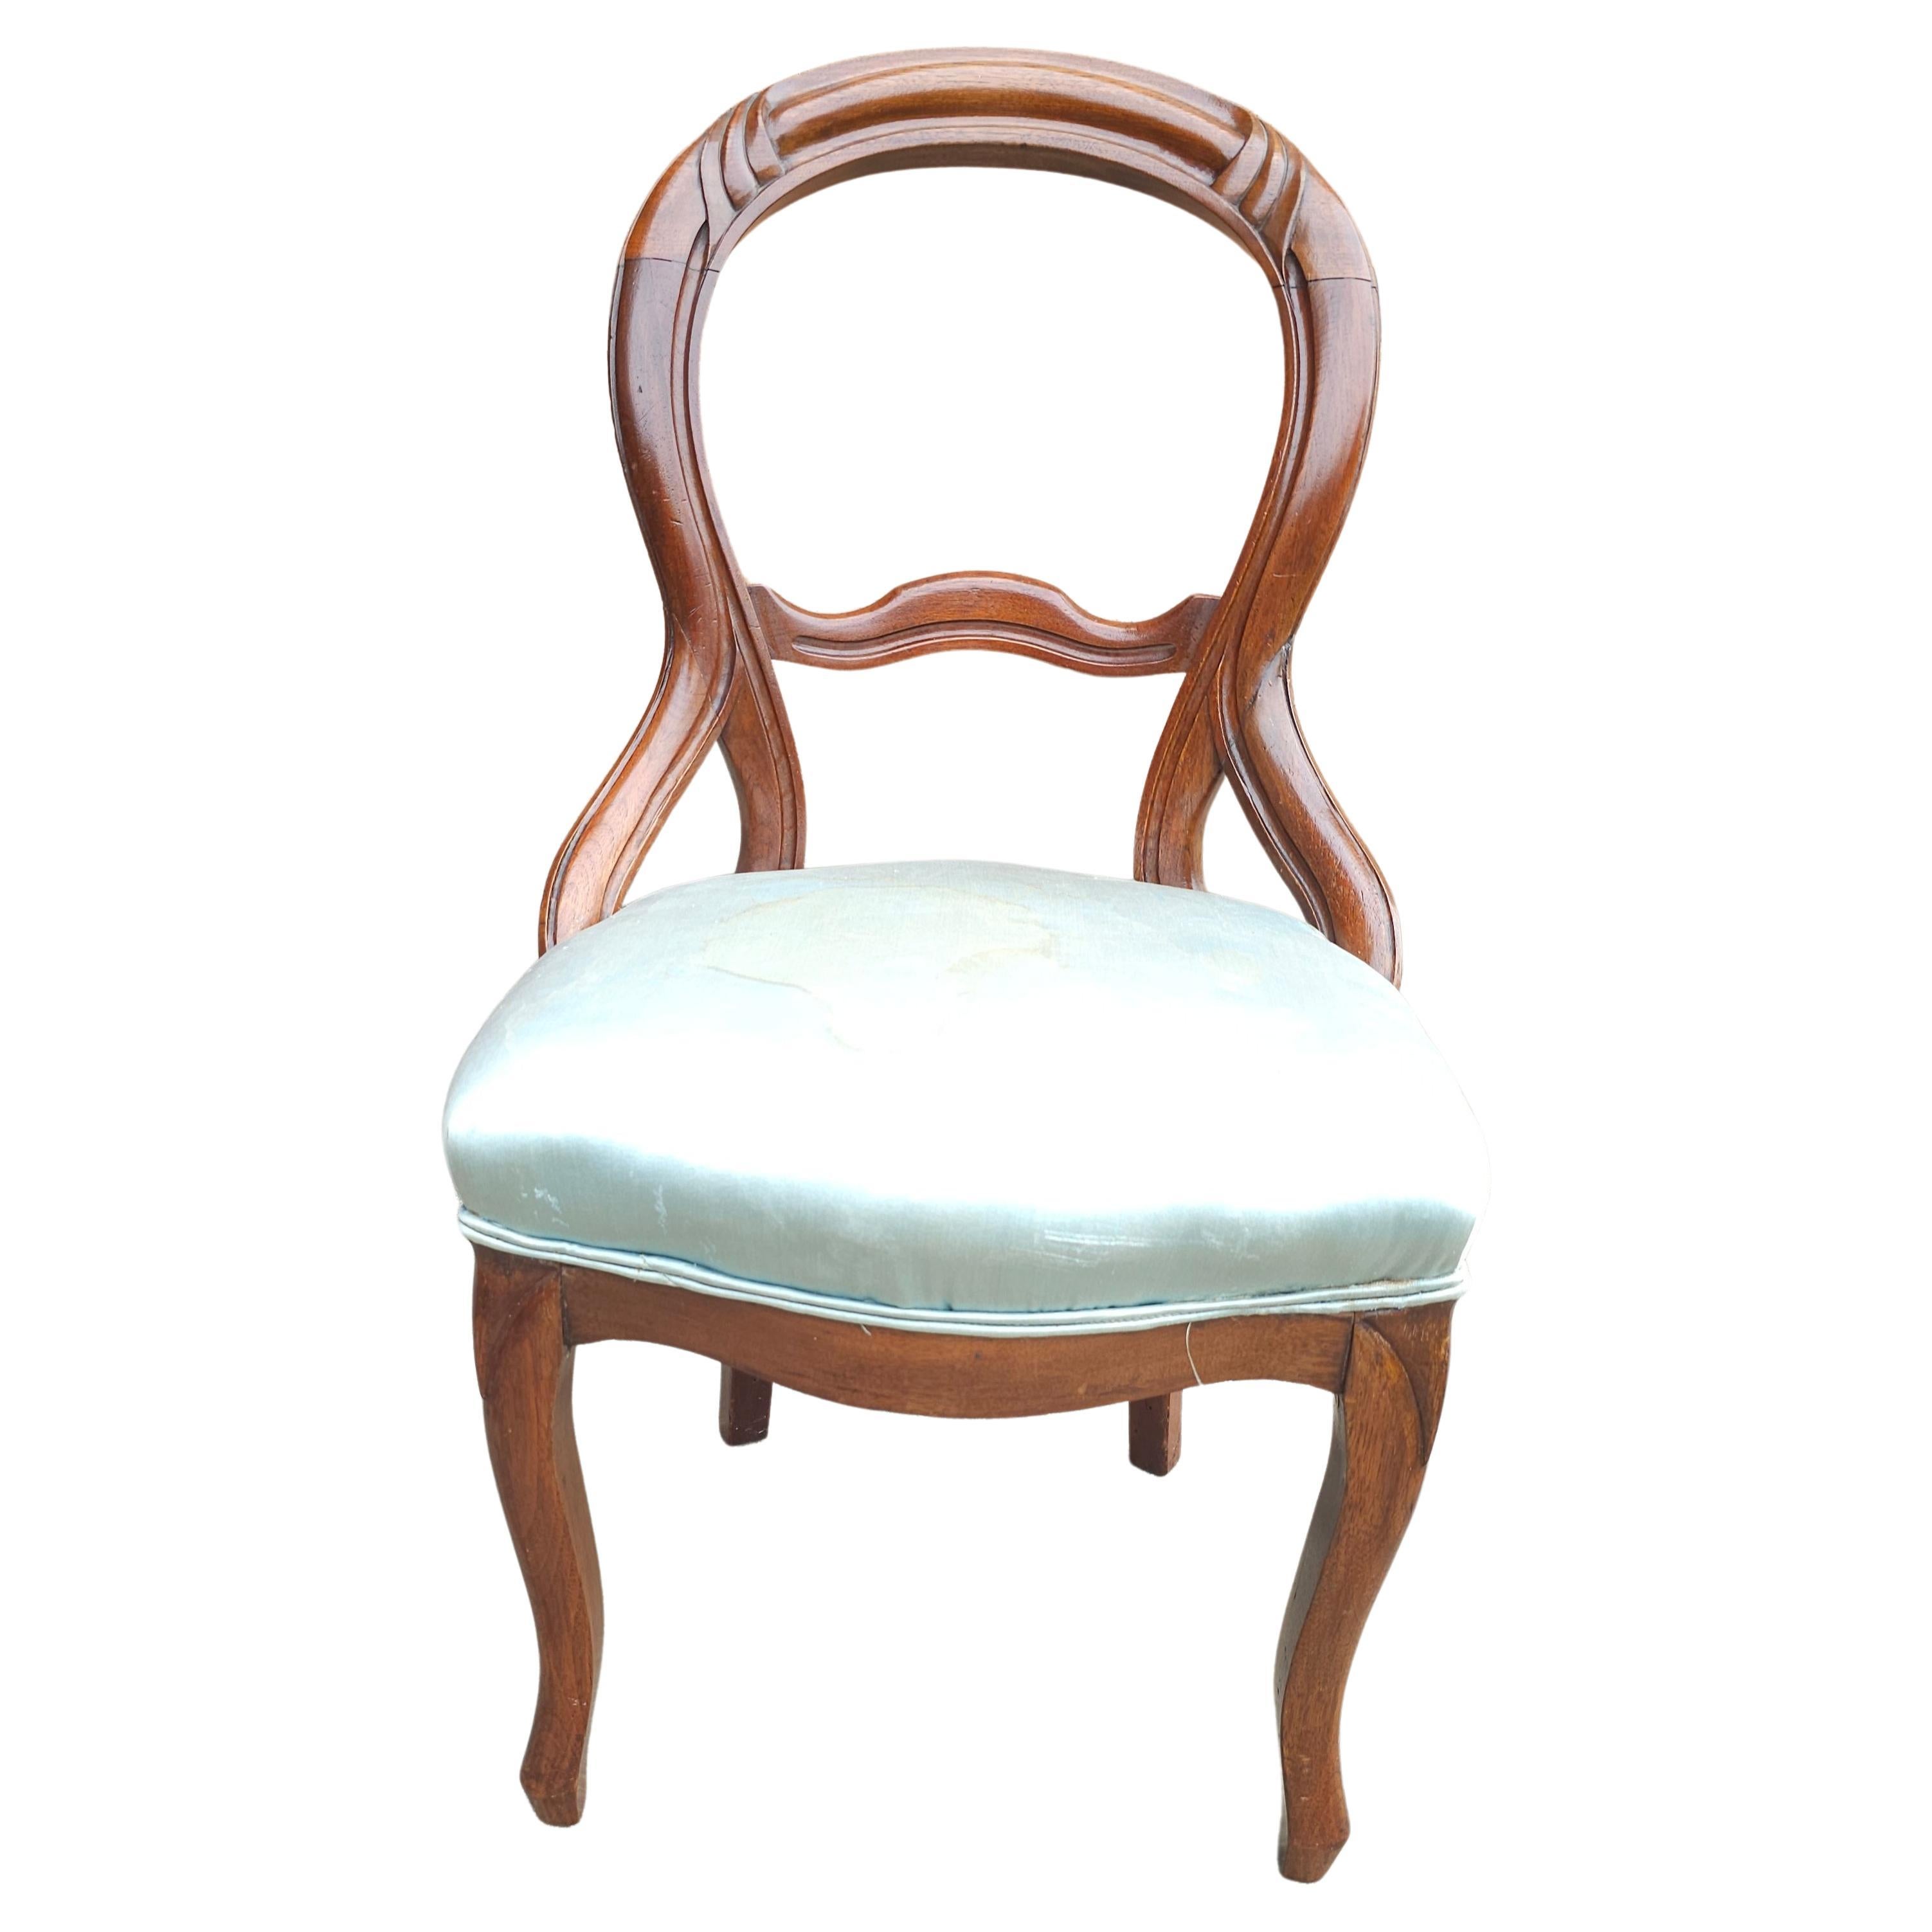 19. Jahrhundert viktorianischen geschnitzt Magogany und gepolsterten Stuhl. Maße: 20